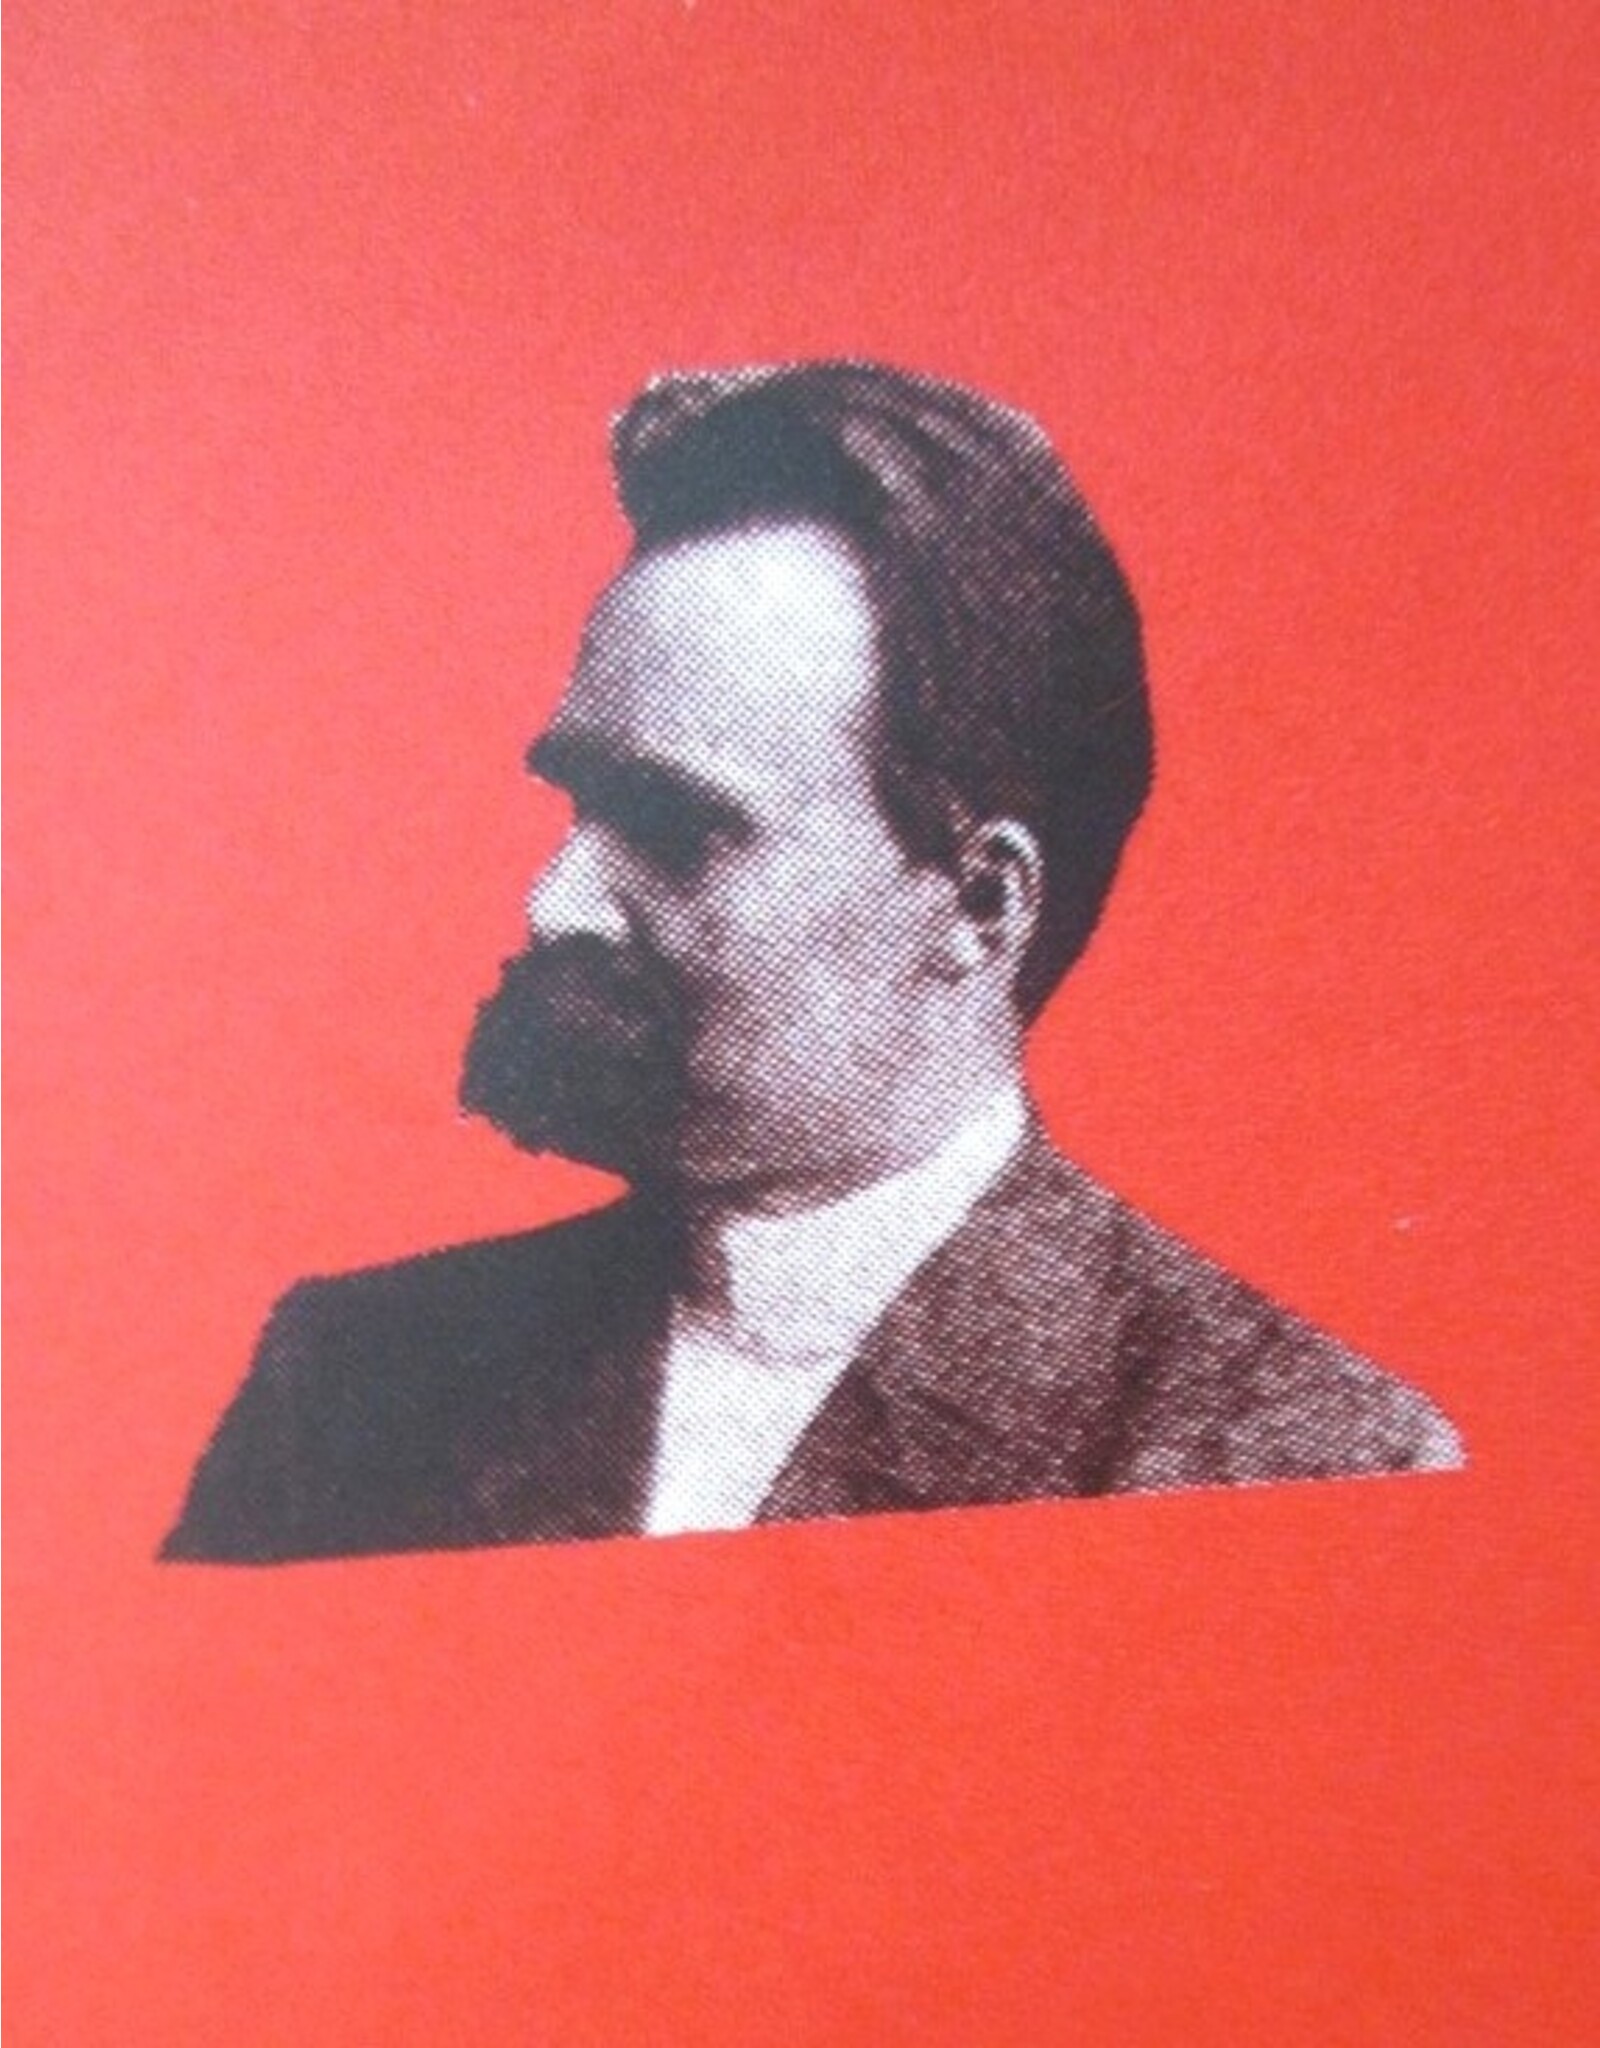 Friedrich Nietzsche - Nagelaten fragmenten Deel 1 [t/m 7: 1869-1889]. Teksteditie en annotatie door Giorgio Colli en Mazzino Montinari